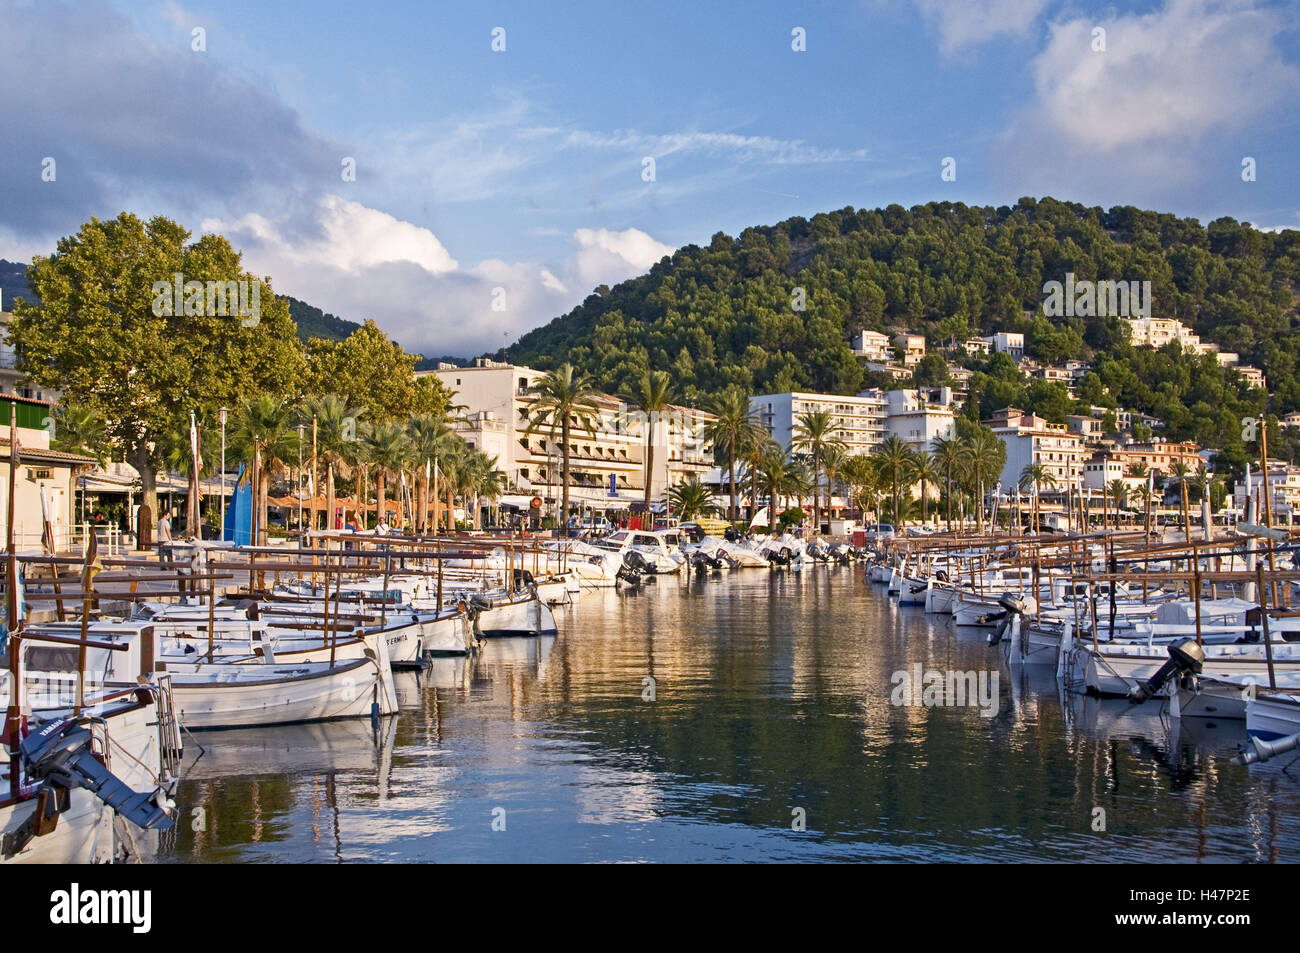 Spanien, die Balearen, Mallorca, Port de Sóller, Hafen, Motorboote, Hotels, Stockfoto